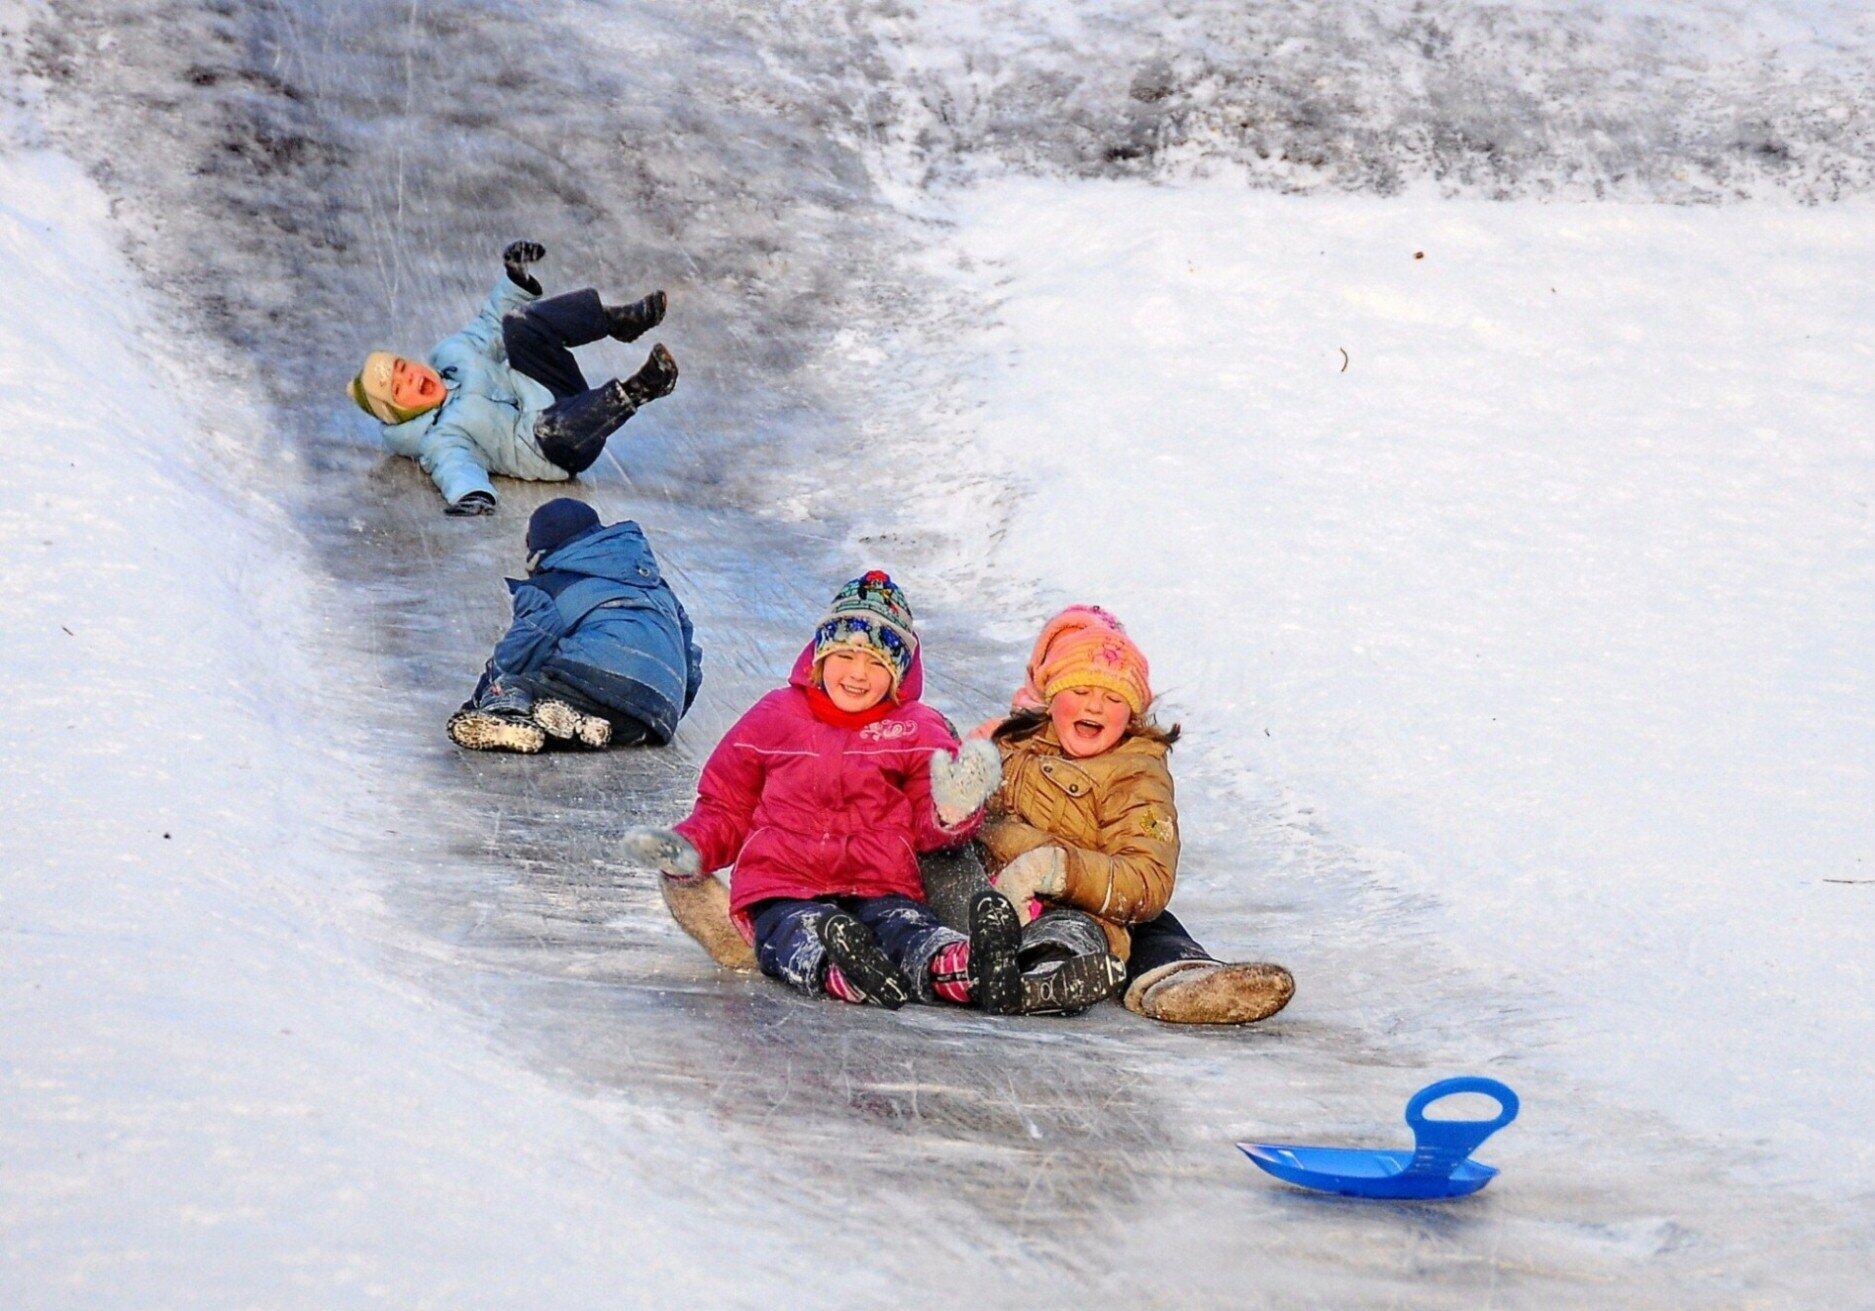 Откат на горке. Катание с горки зимой. Катание с горки дети. Дети на Горке зимой. Дети катаются на ледянках.